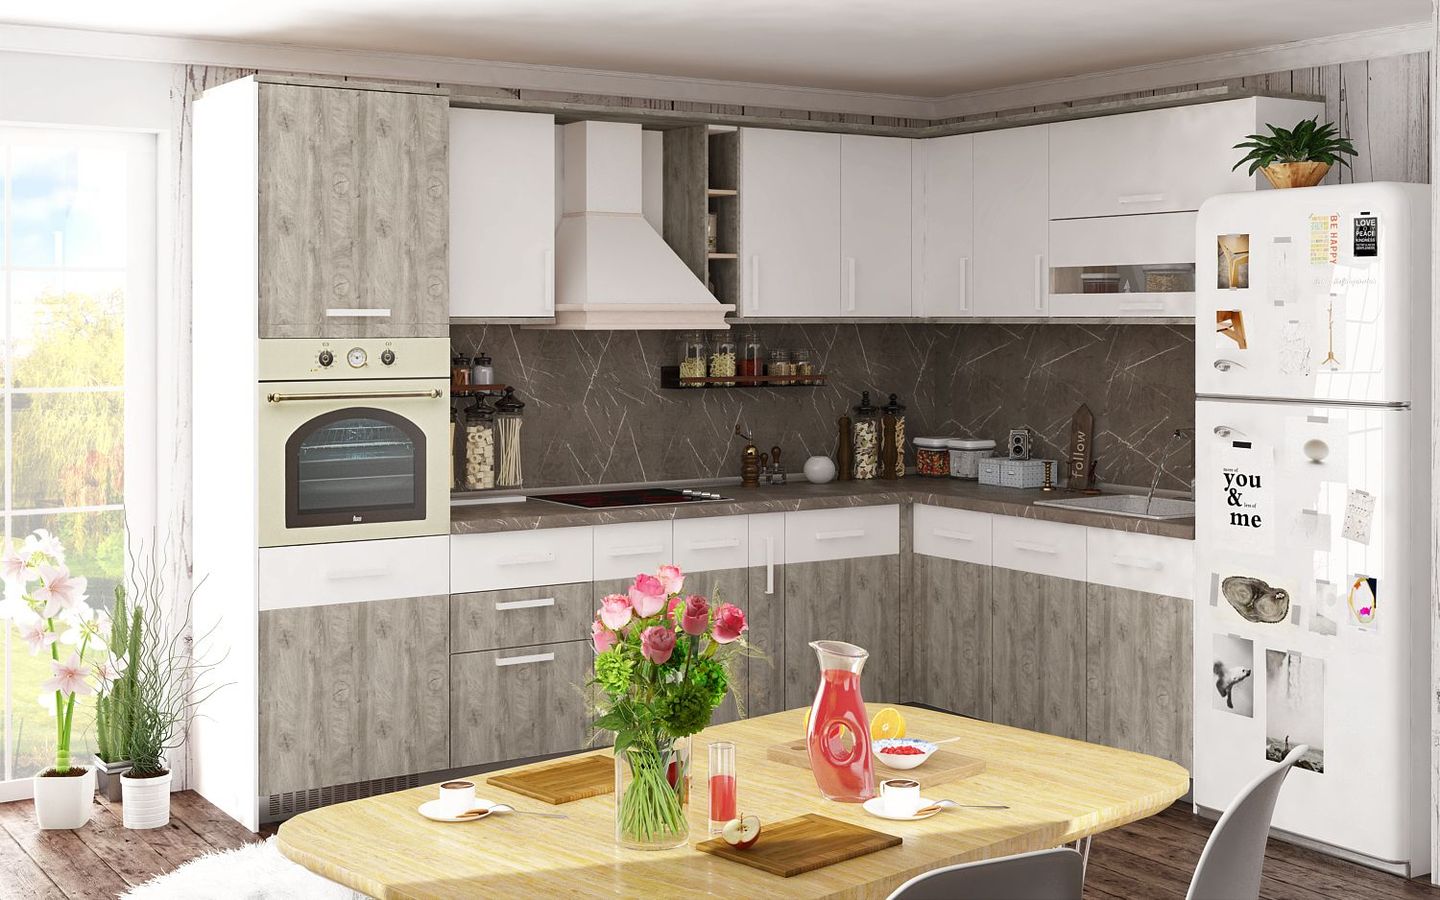 Model kitchen set minimalis mewah dan elegan urban style terbuat dari perpaduan material kayu dan batu alam.